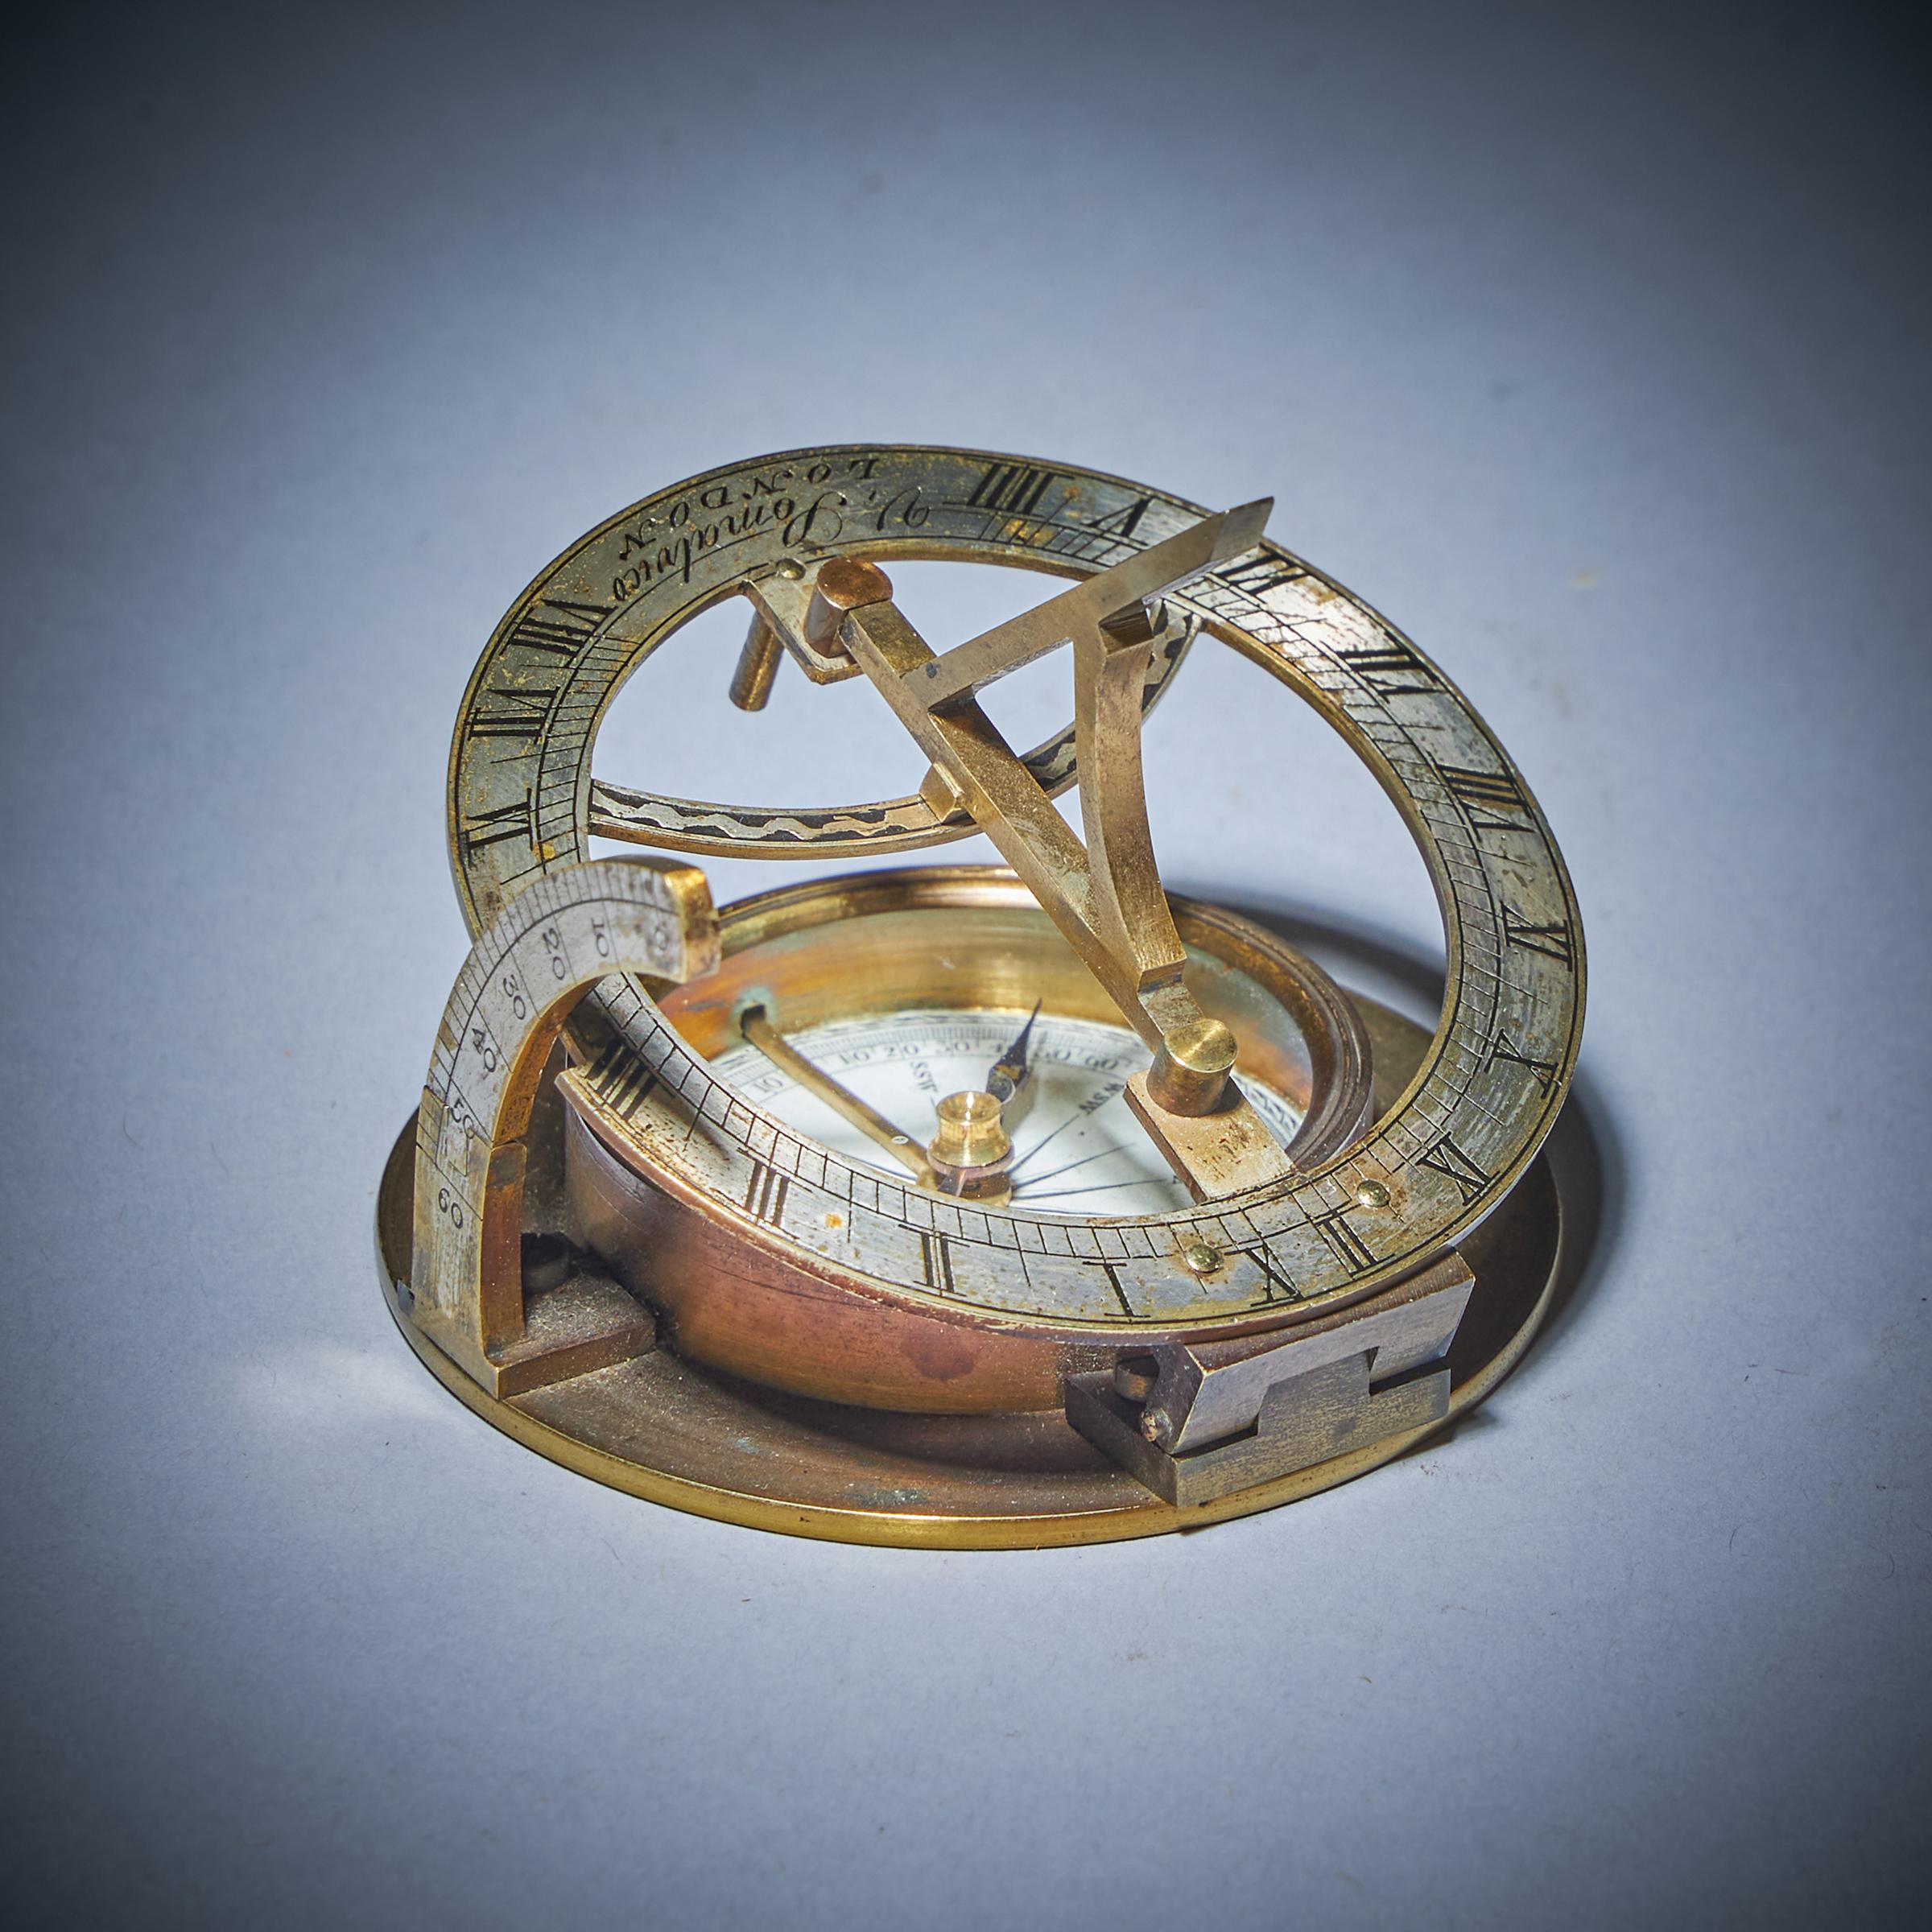 19th Century Equinoctial Pocket Sundial in Original Case, signed V. Simalvico 1